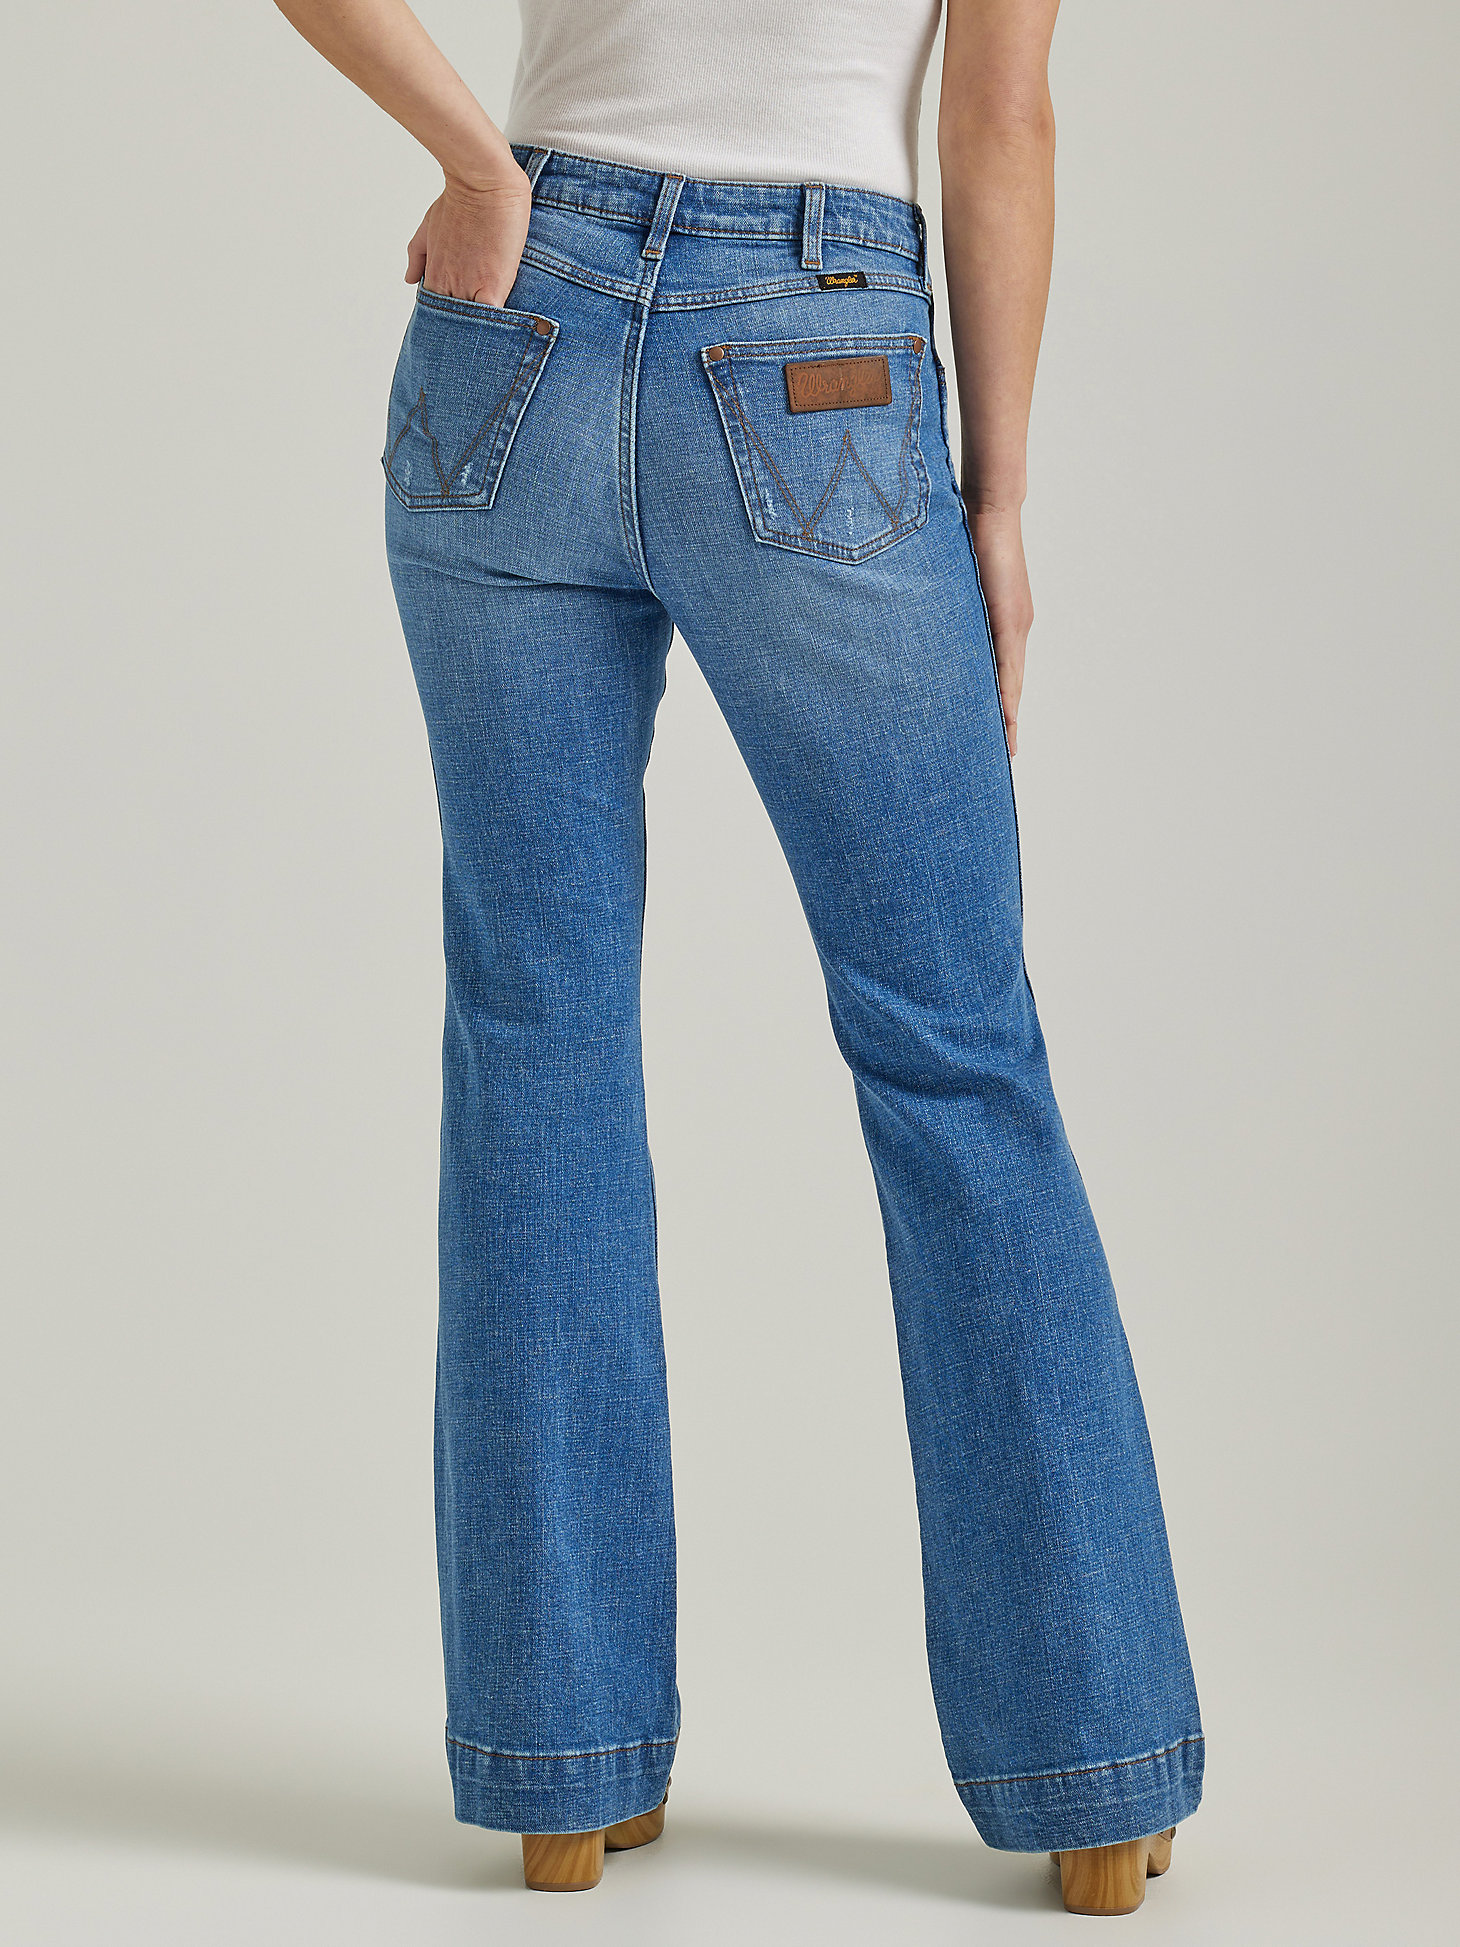 Women's Wrangler Retro® High Rise Trouser Jean in Emily alternative view 1